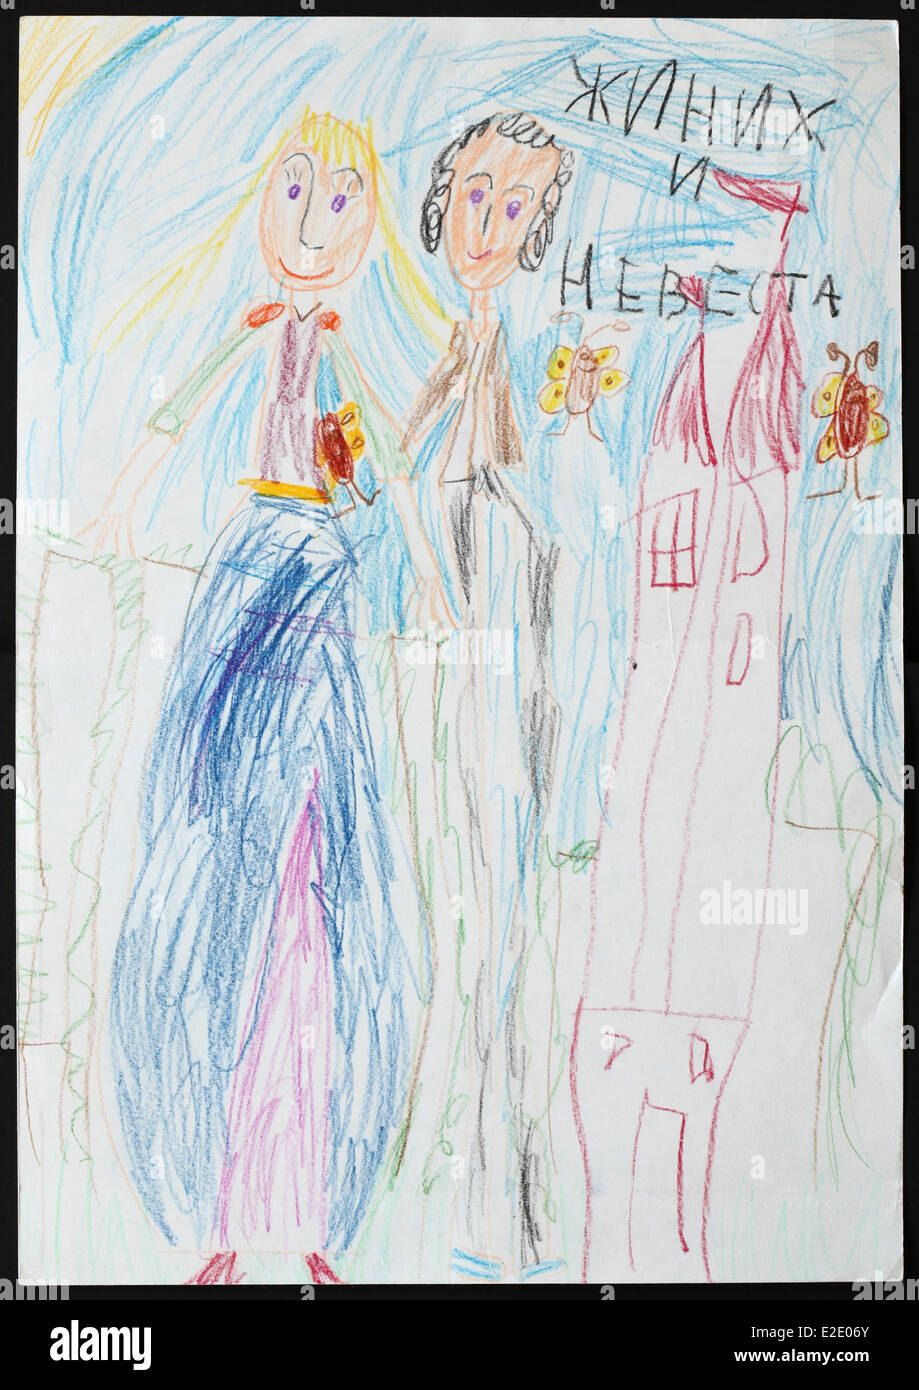 Dibujo del niño original de la novia y del novio dibujado por una niña de 5 años. Inscripción en ruso: La Novia y el novio. Foto de stock